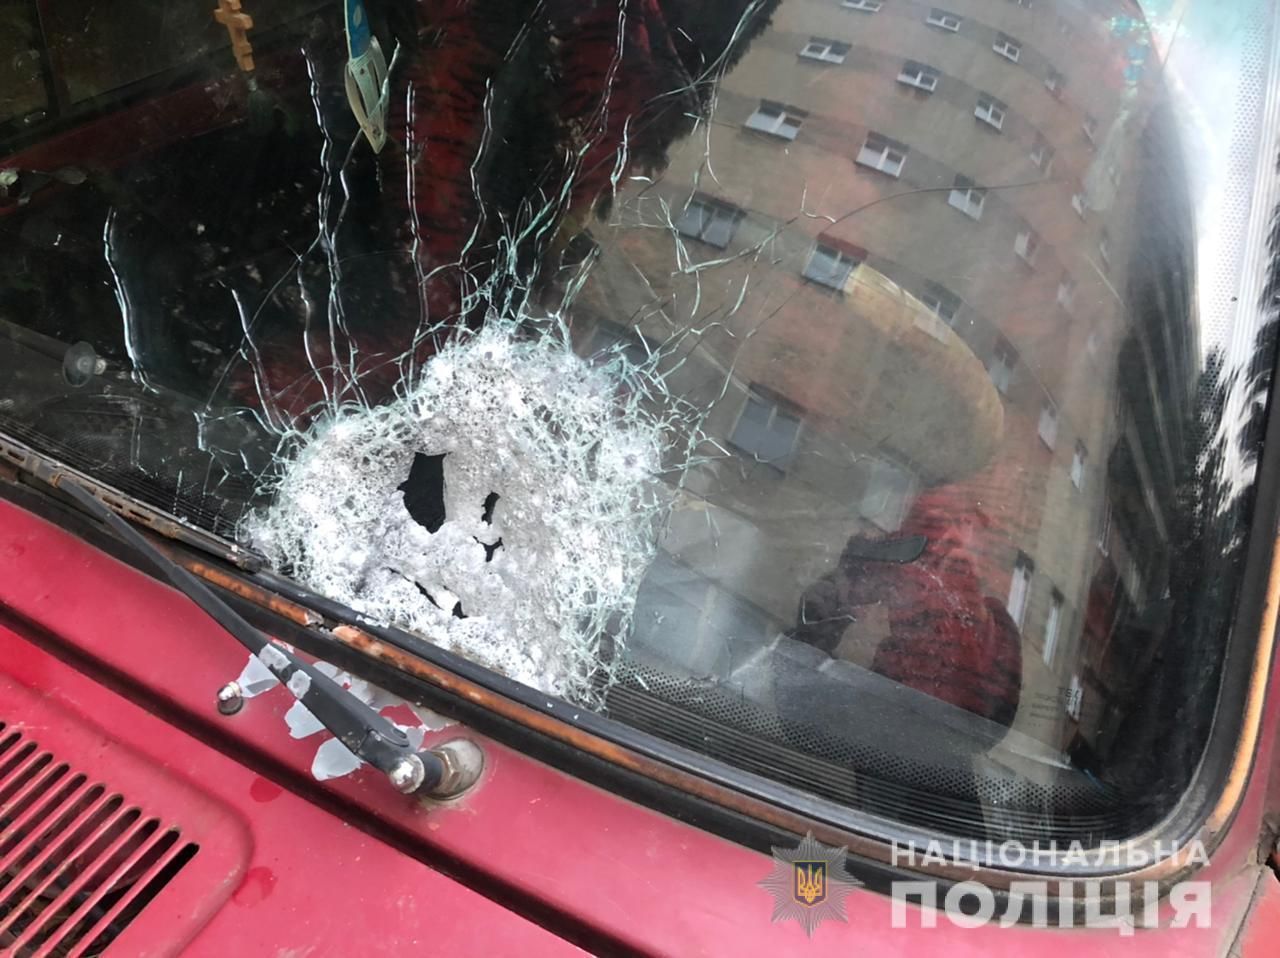 Невідомі обстріляли автомобіль у Чернівцях: є постраждалі - Україна новини - 24 Канал